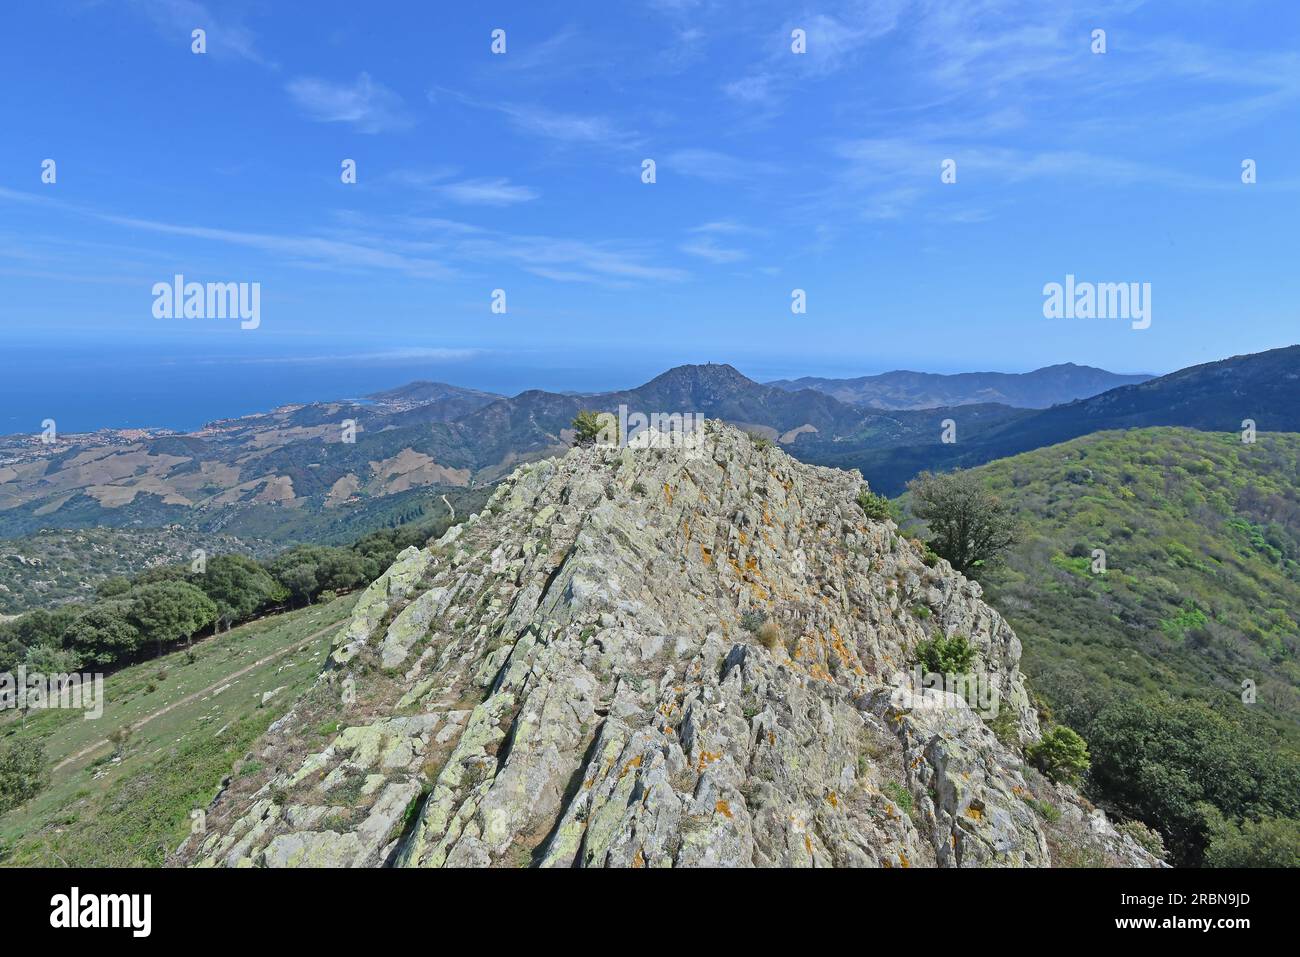 Paysage des montagnes des Alberes et de la côte Vermeille du sud de la France et du nord de l'Espagne Banque D'Images